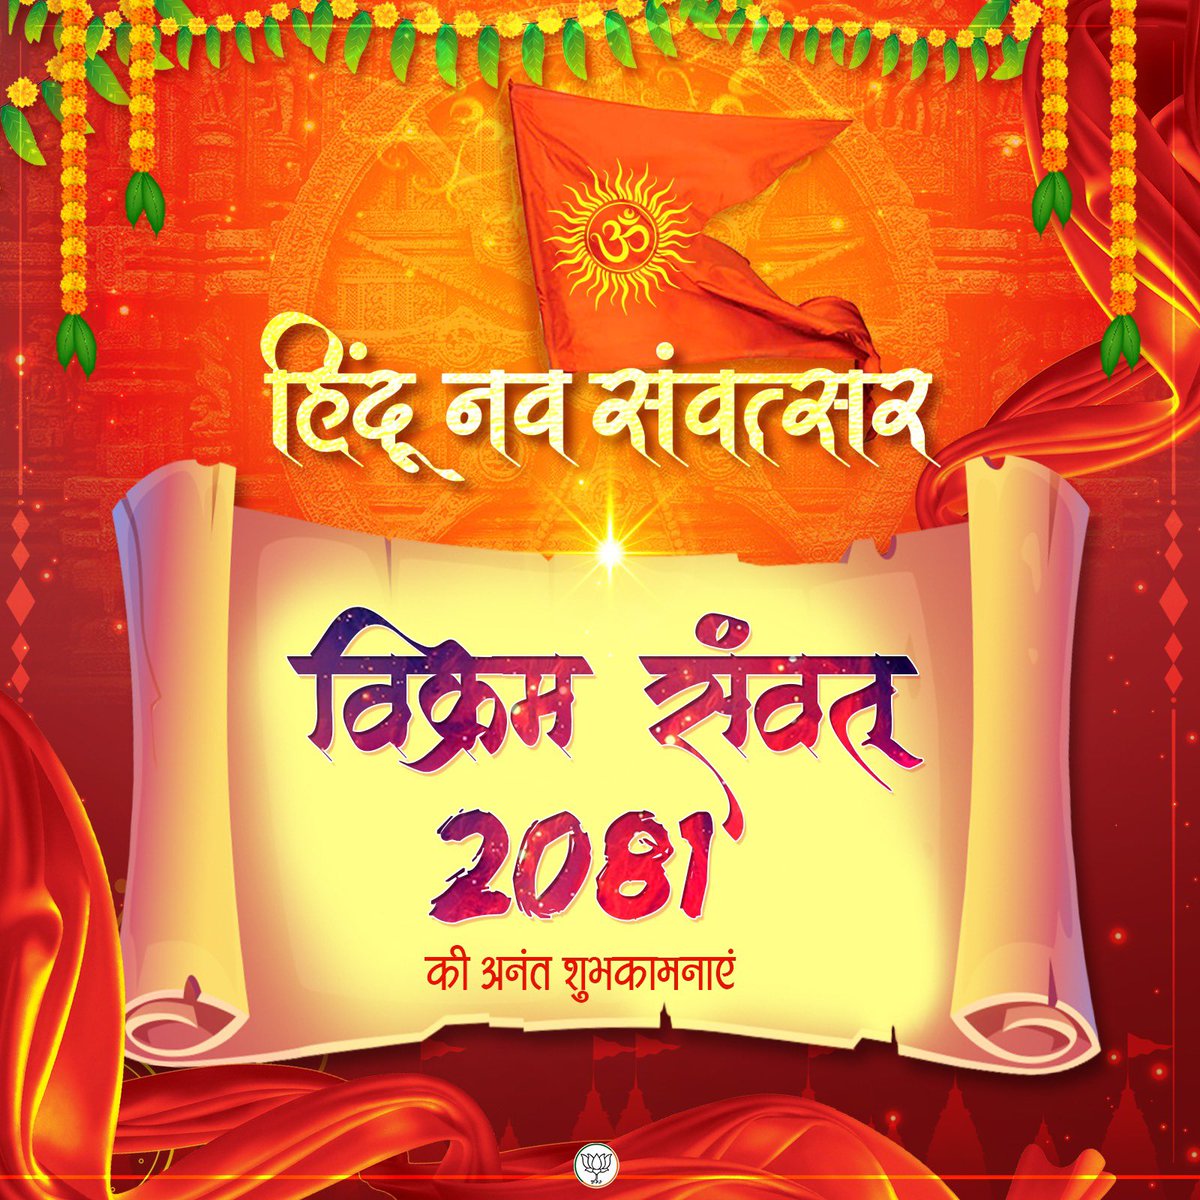 सभी हिंदुओं को हिंदू नववर्ष की हार्दिक शुभकामनाएं 

#नवसंवत्सर 
#नवरात्रि 🙏🙏